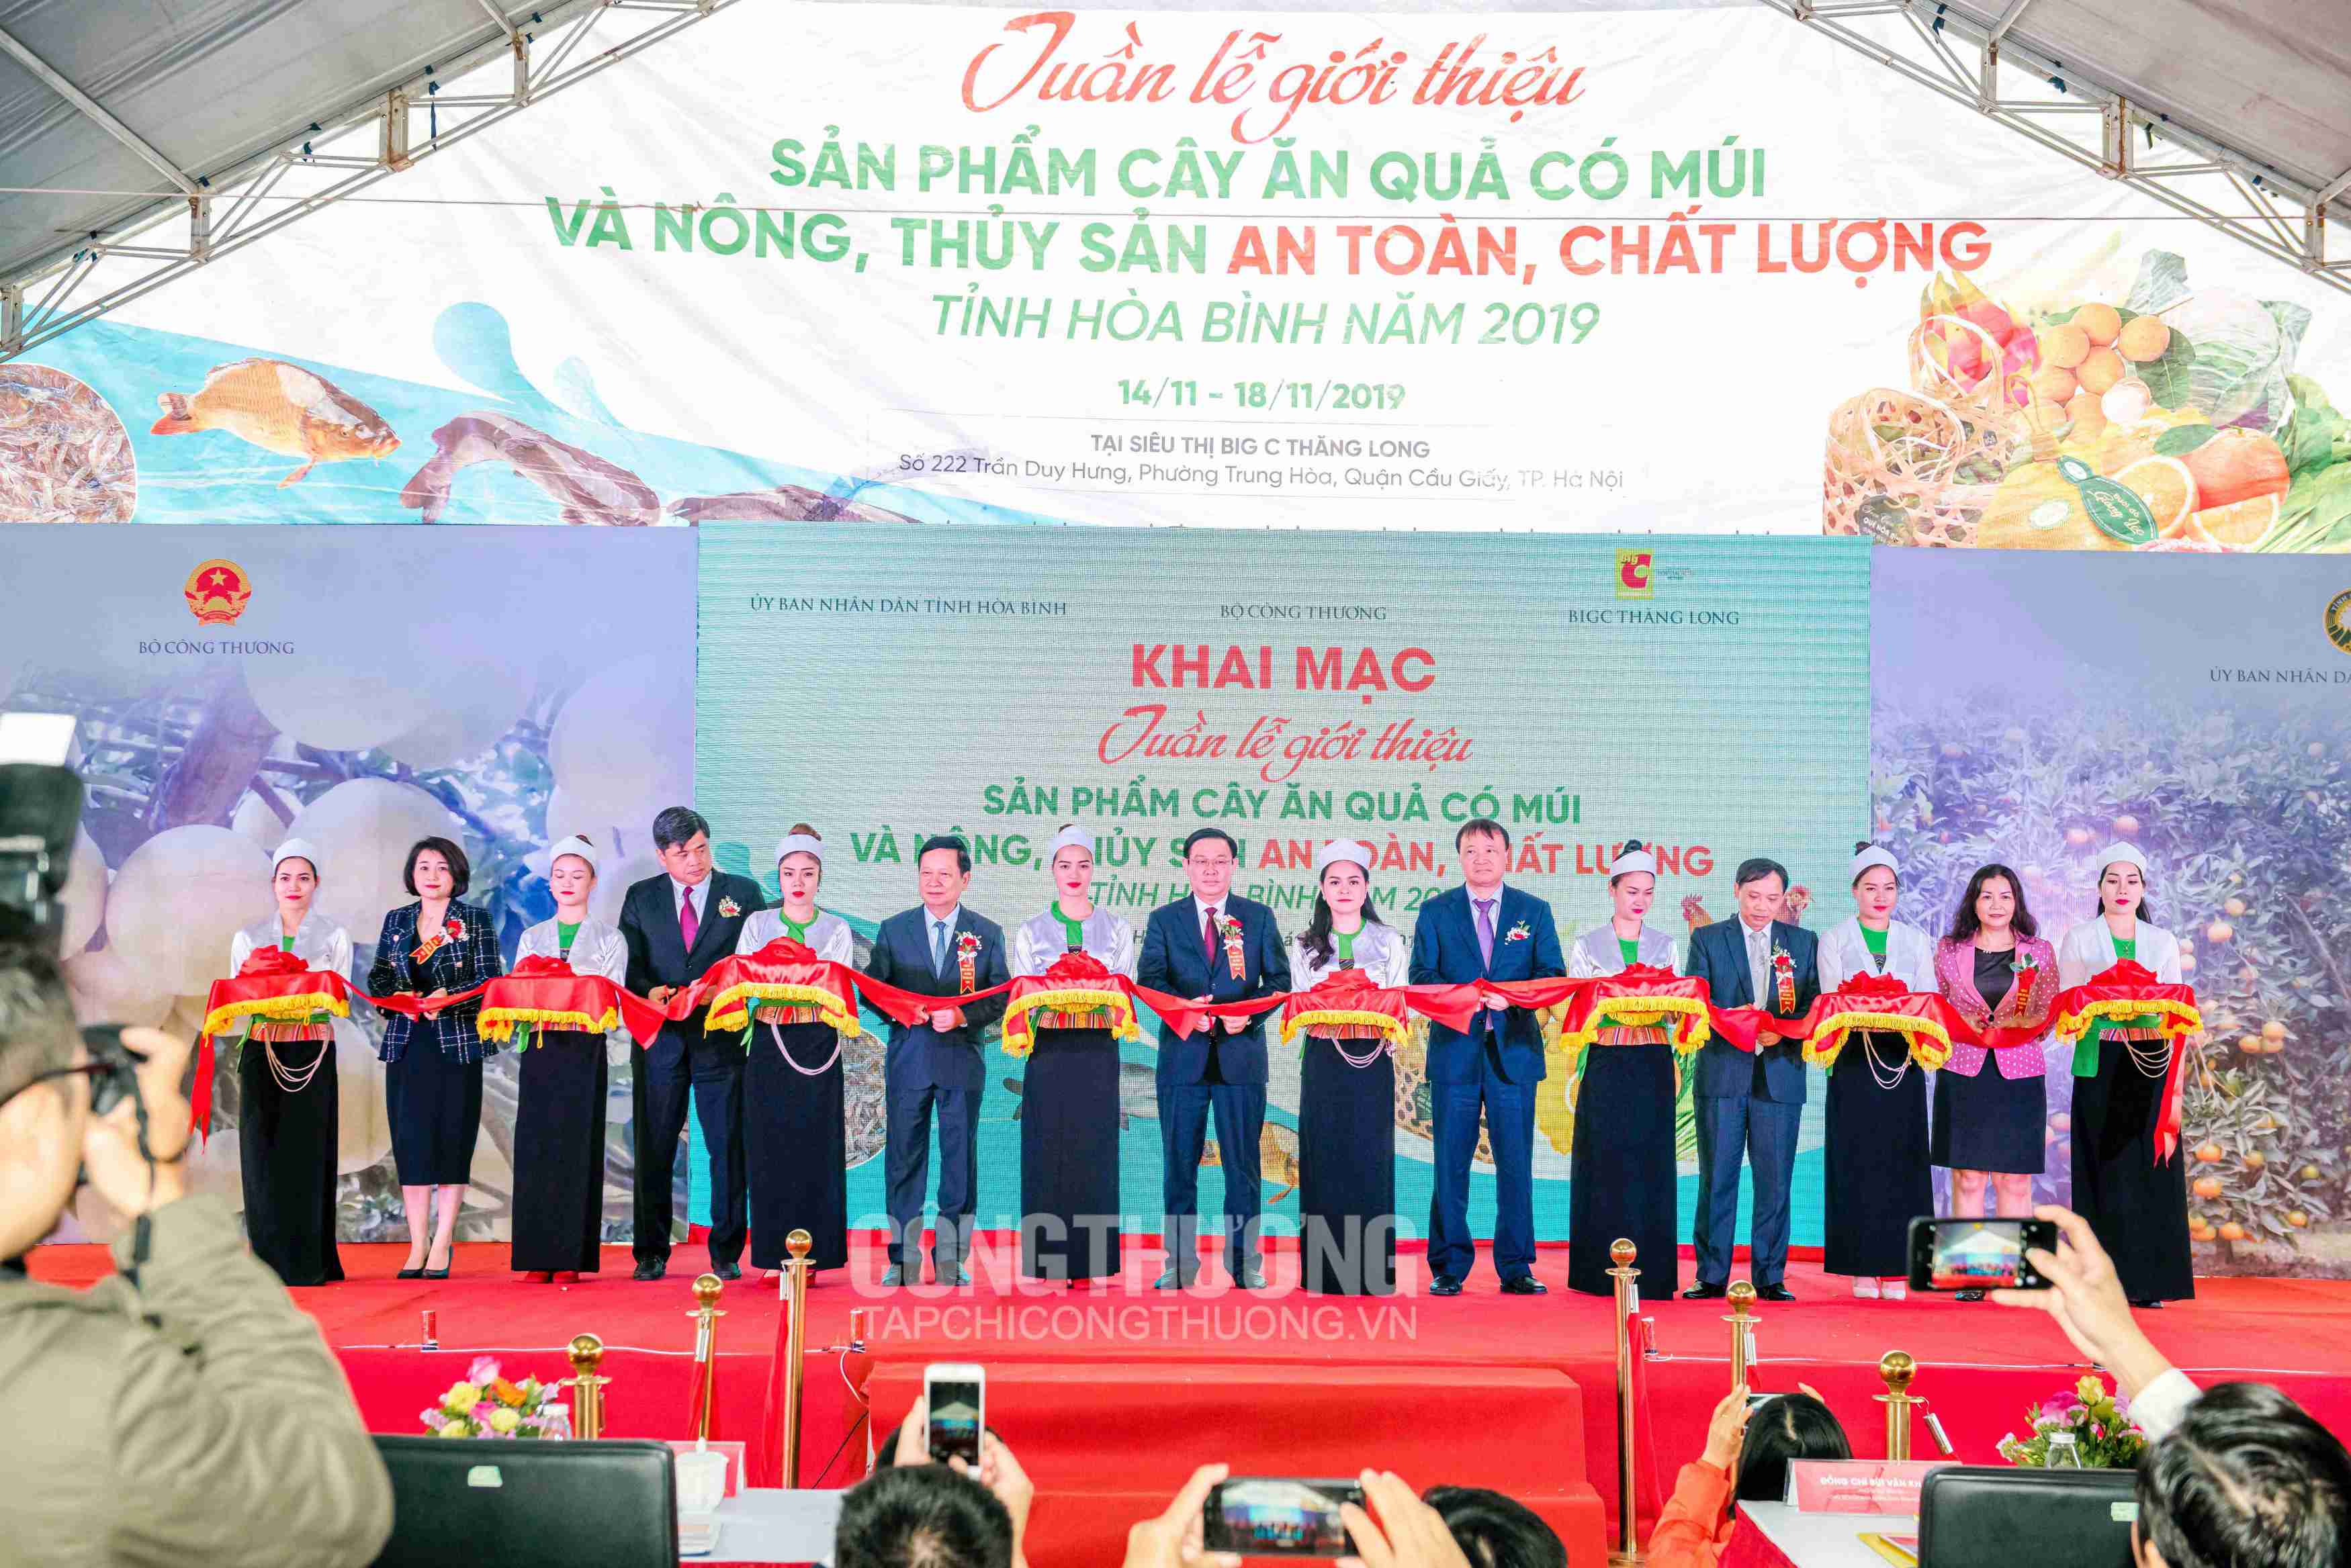 Phó Thủ tướng Vương Đình Huệ cùng lãnh đạo các Bộ, ngành, UBND tỉnh Hòa Bình và Central Retail Việt Nam cắt băng khai mạc Tuần lễ